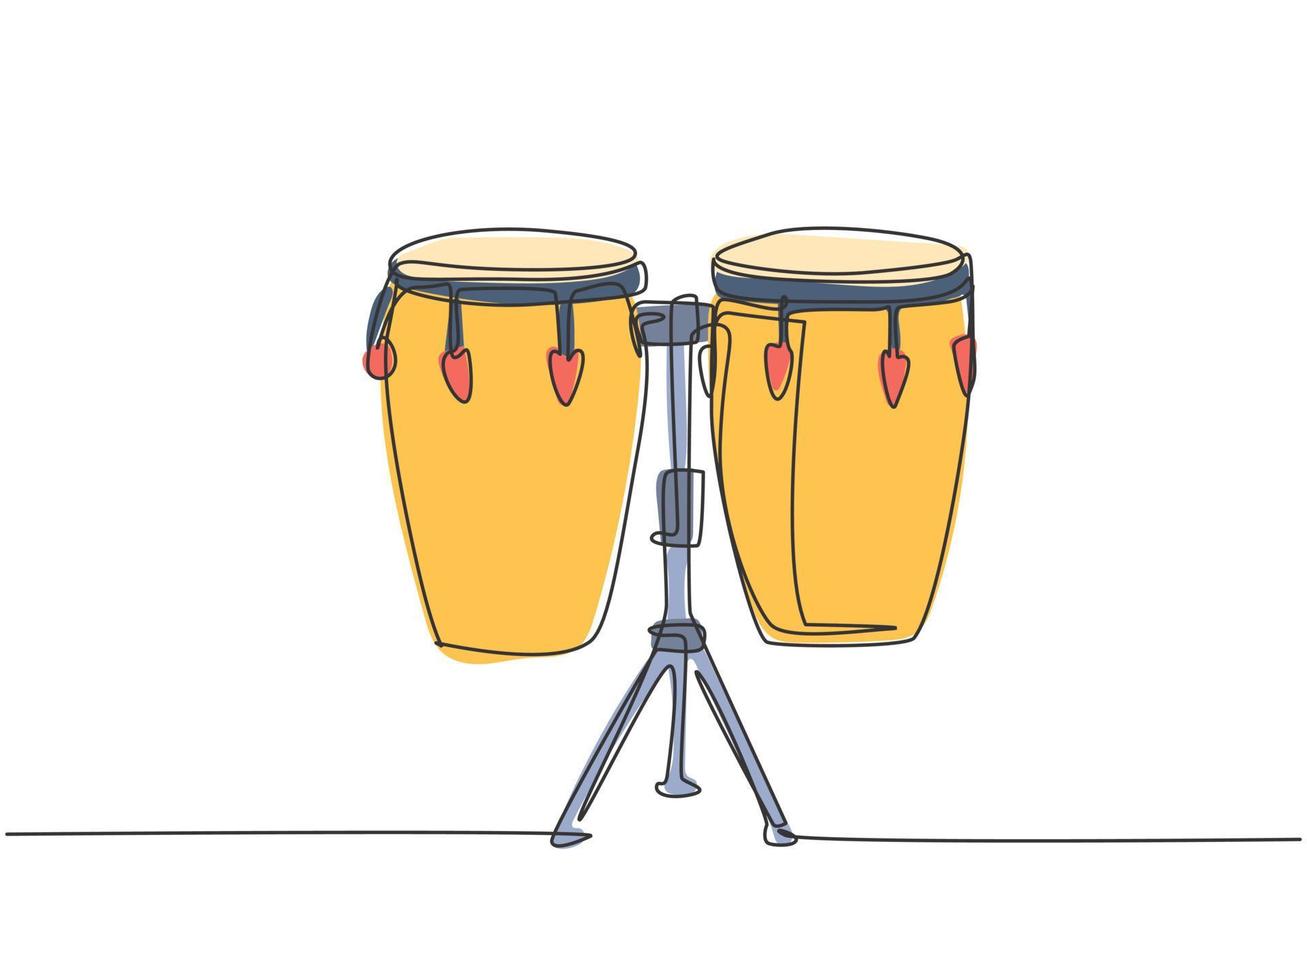 un dessin au trait continu du tambour ethnique africain traditionnel, bongo. concept d'instruments de musique à percussion. illustration vectorielle de dessin graphique à une seule ligne dynamique vecteur